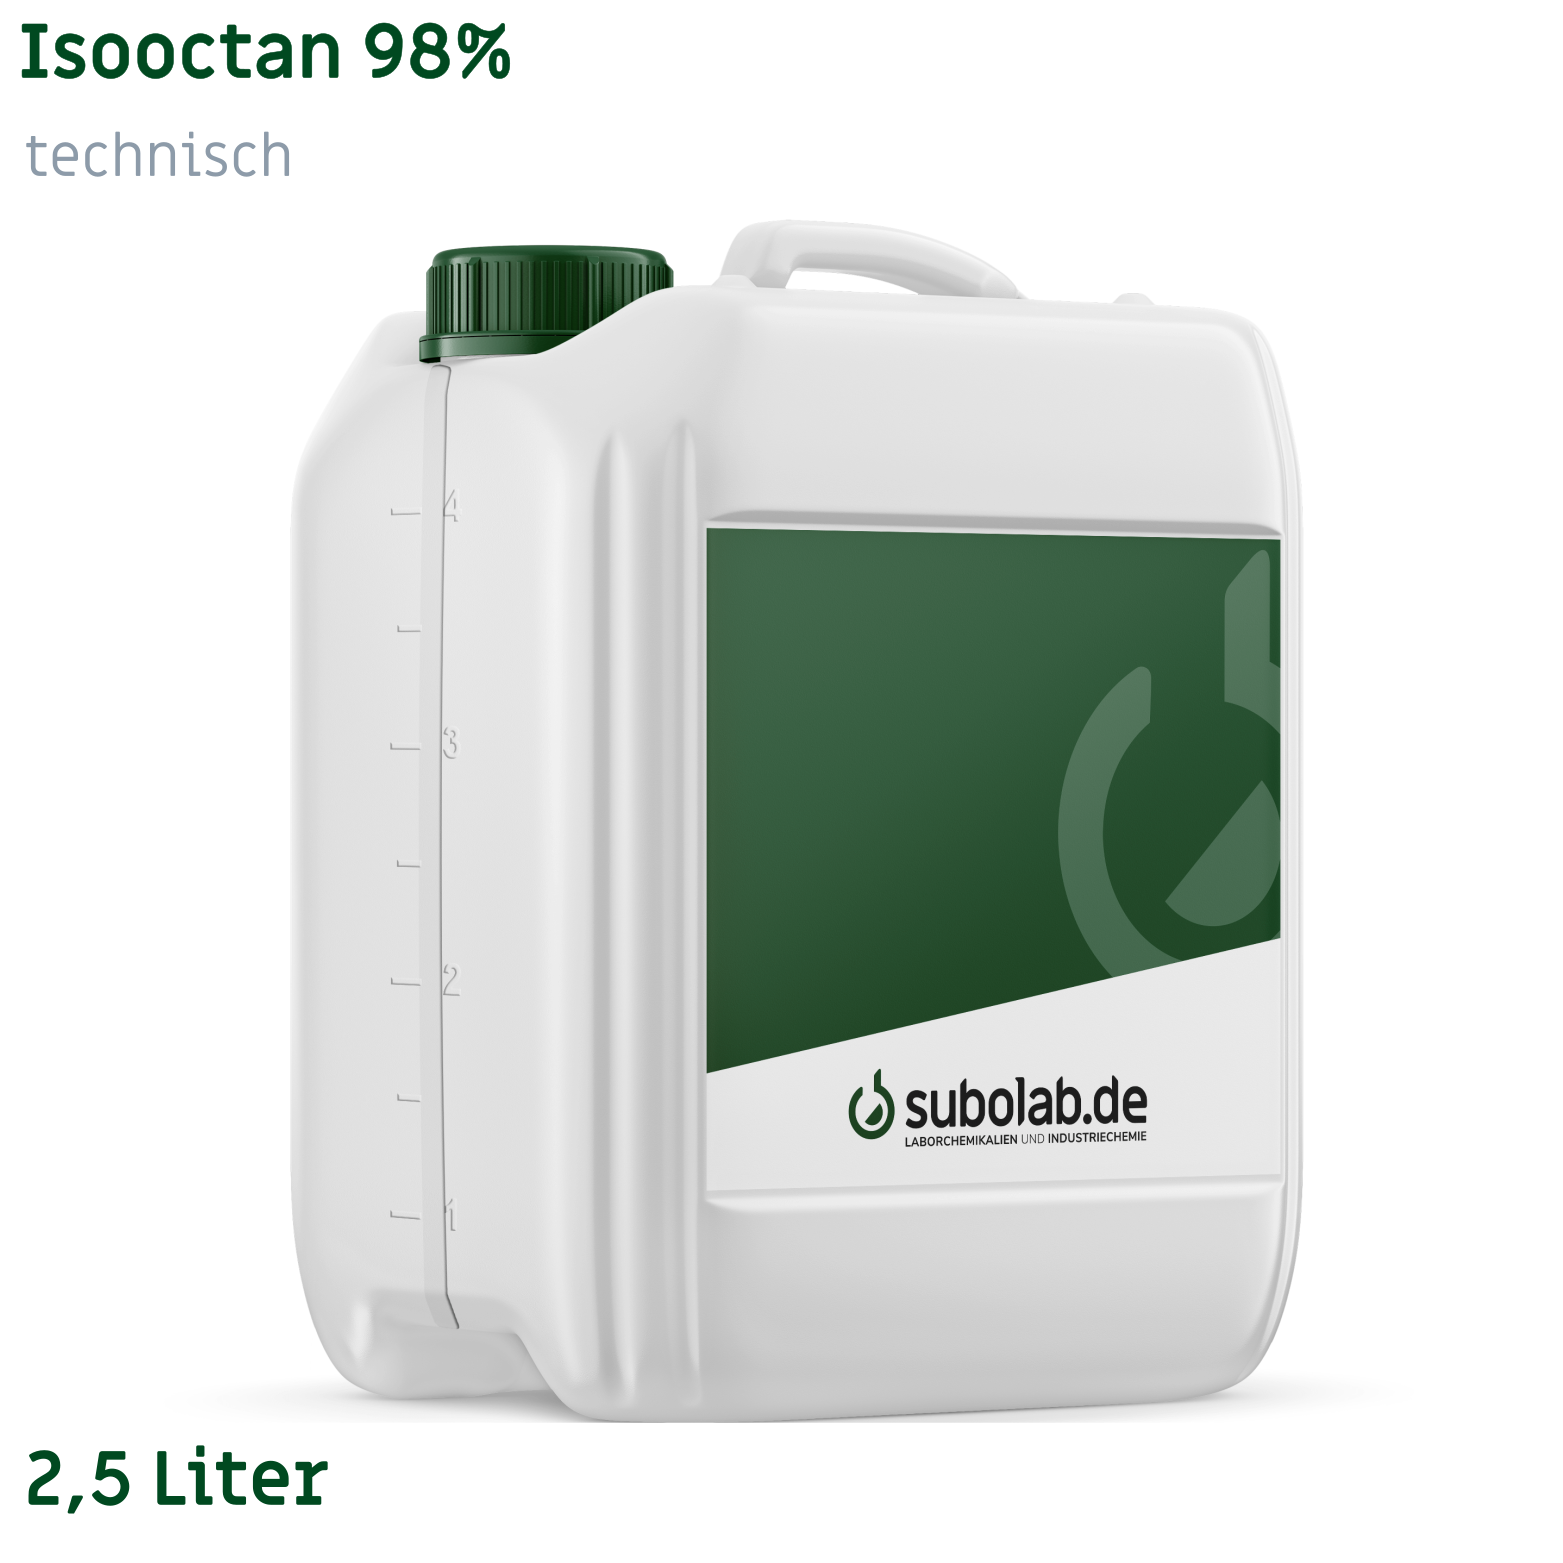 Bild von Isooctan 98% technisch (2,5 Liter)